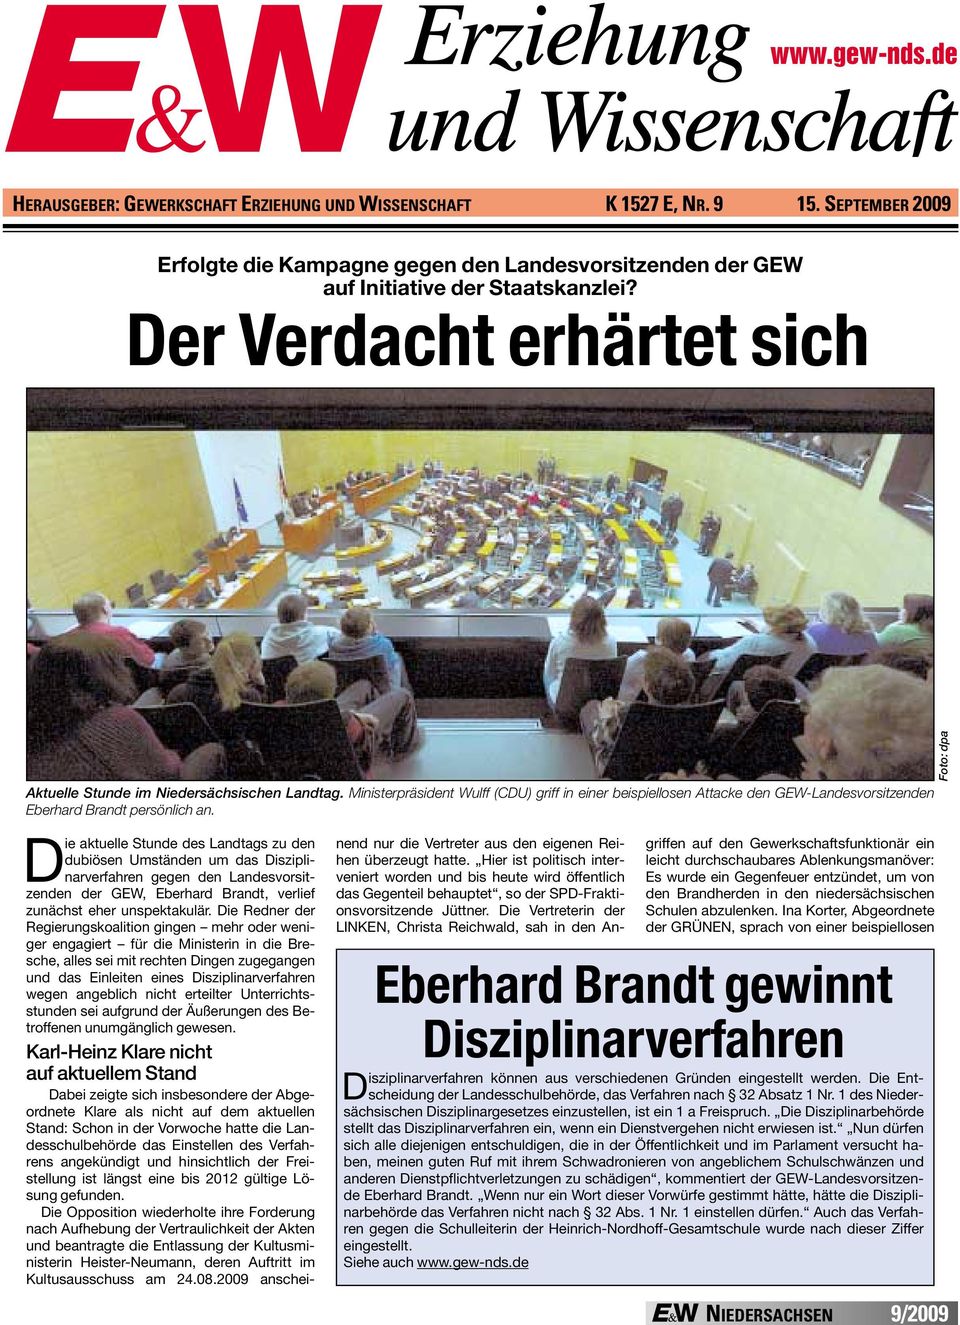 Foto: dpa Die aktuelle Stunde des Landtags zu den dubiösen Umständen um das Disziplinarverfahren gegen den Landesvorsitzenden der GEW, Eberhard Brandt, verlief zunächst eher unspektakulär.